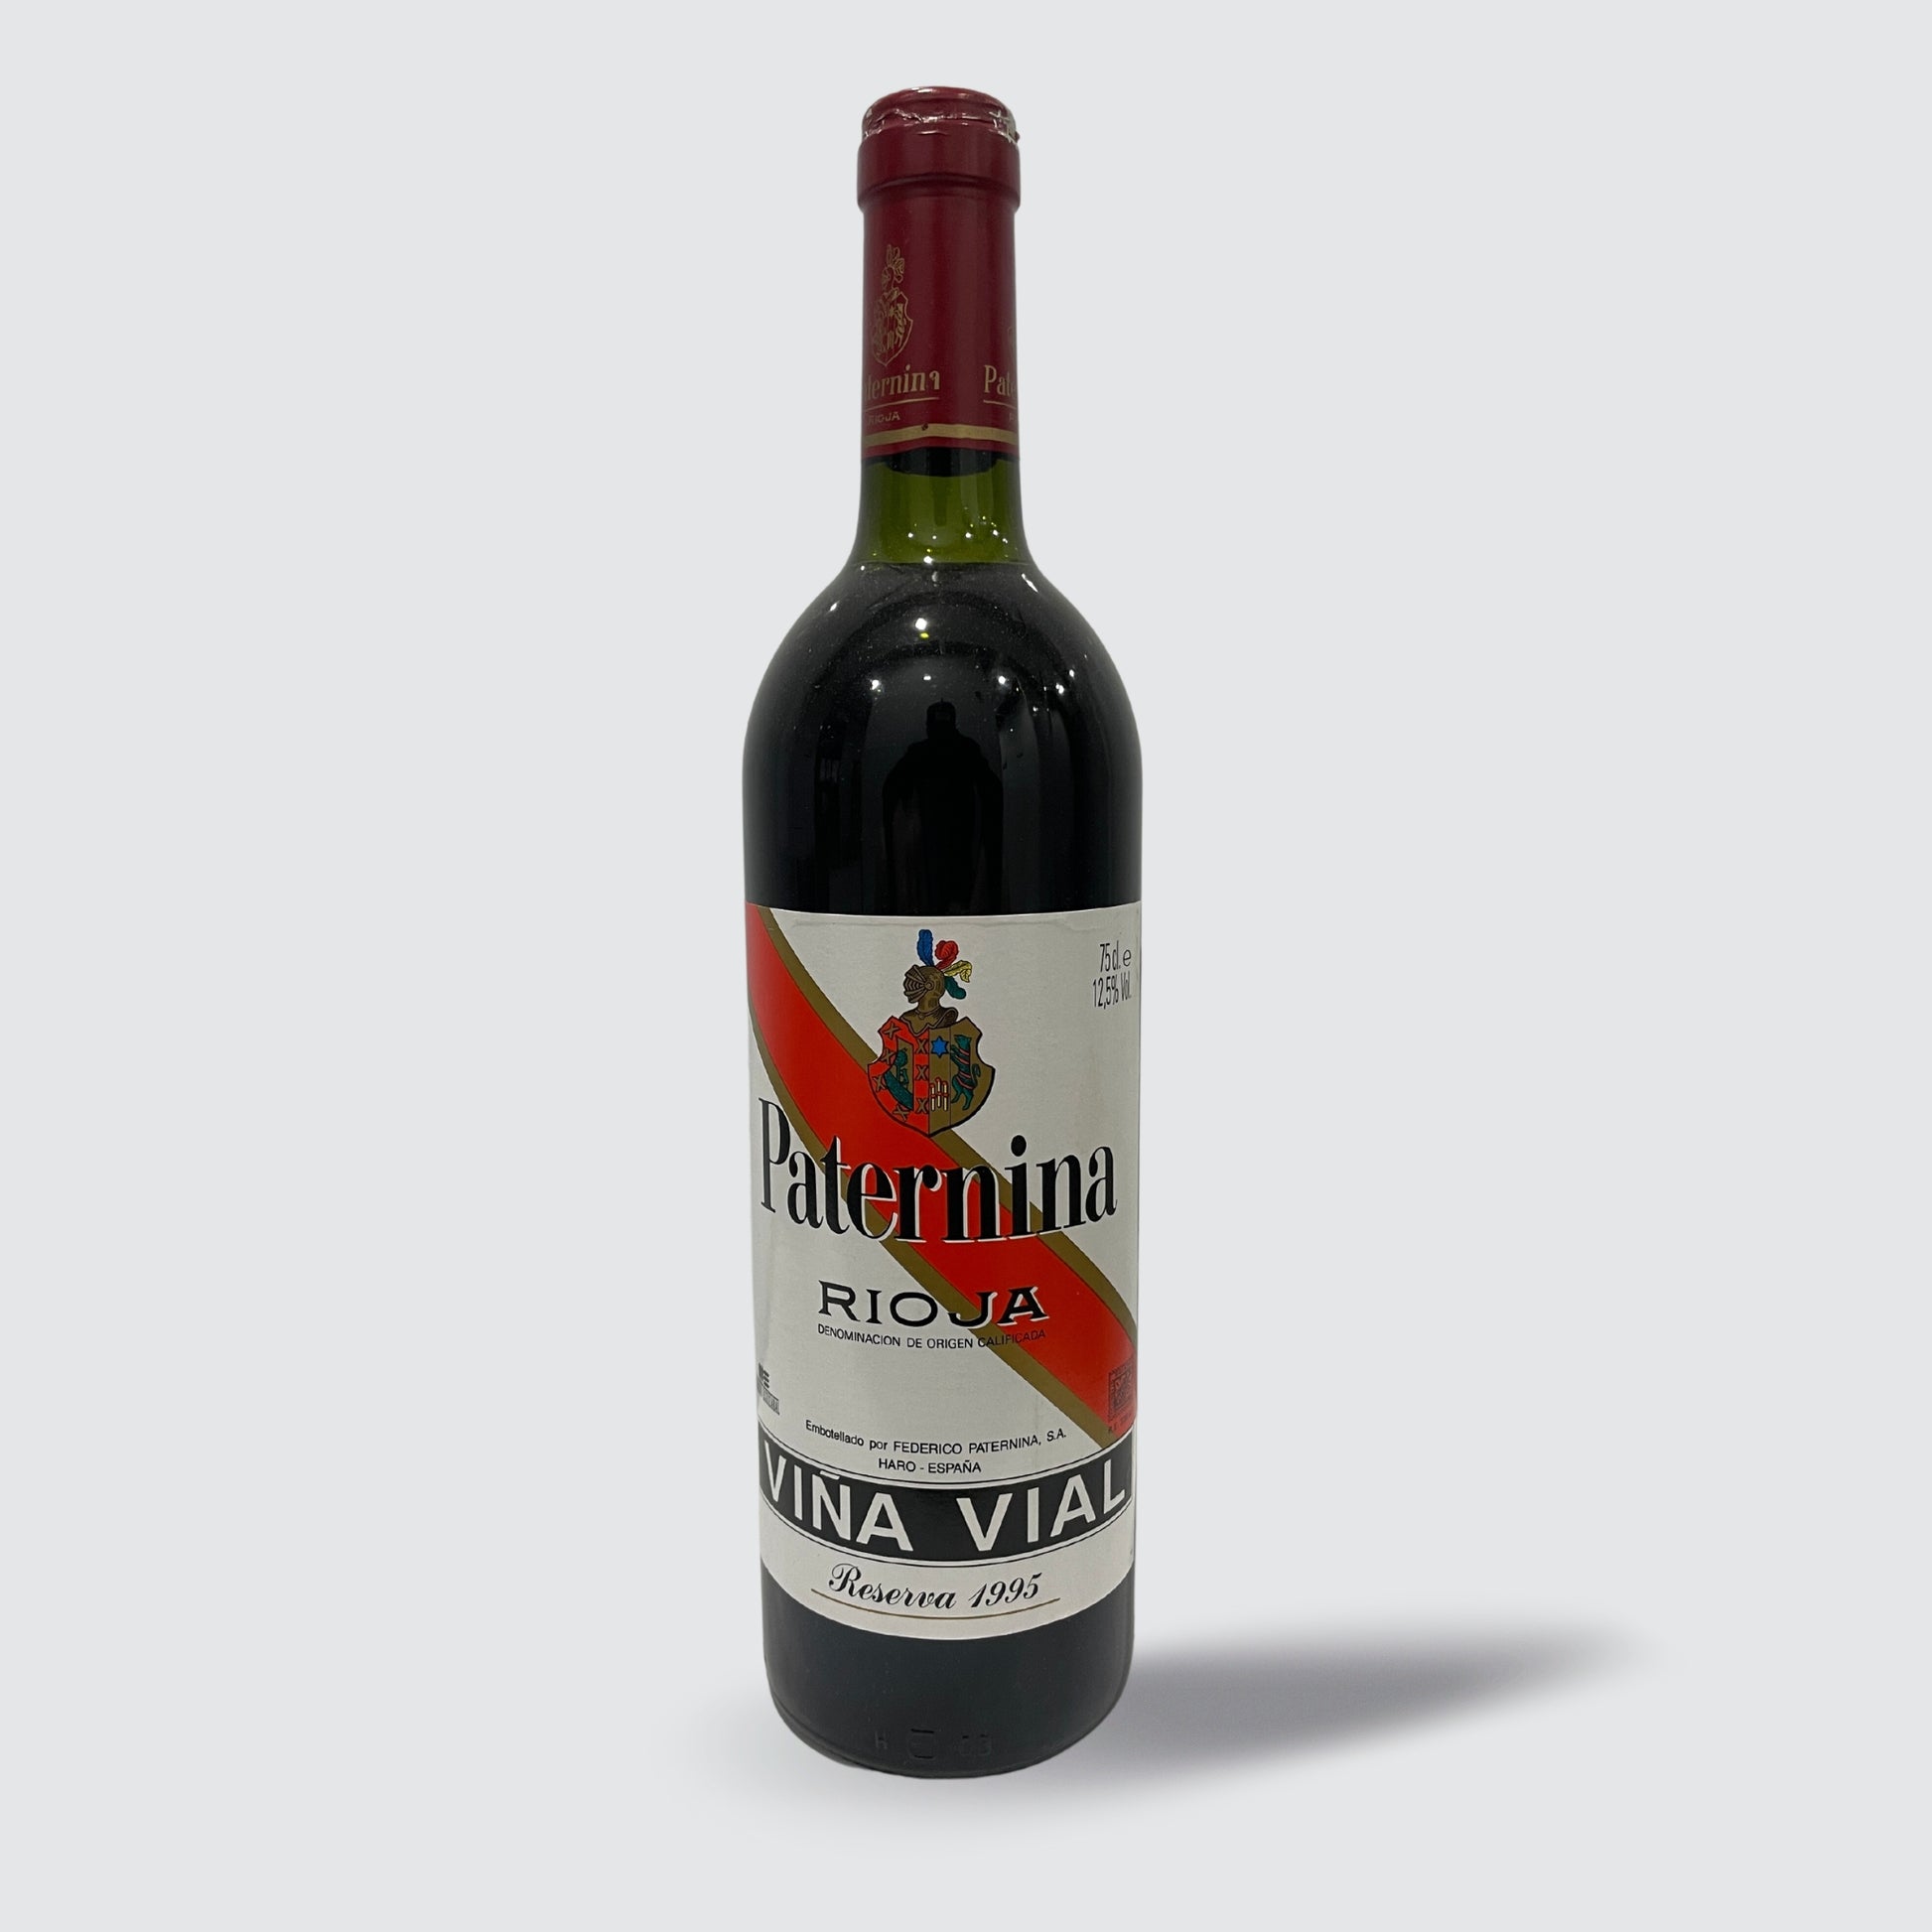 Bodegas Paternina Vina Vial Reserva 1995 Rioja Old Vintage Red Wine